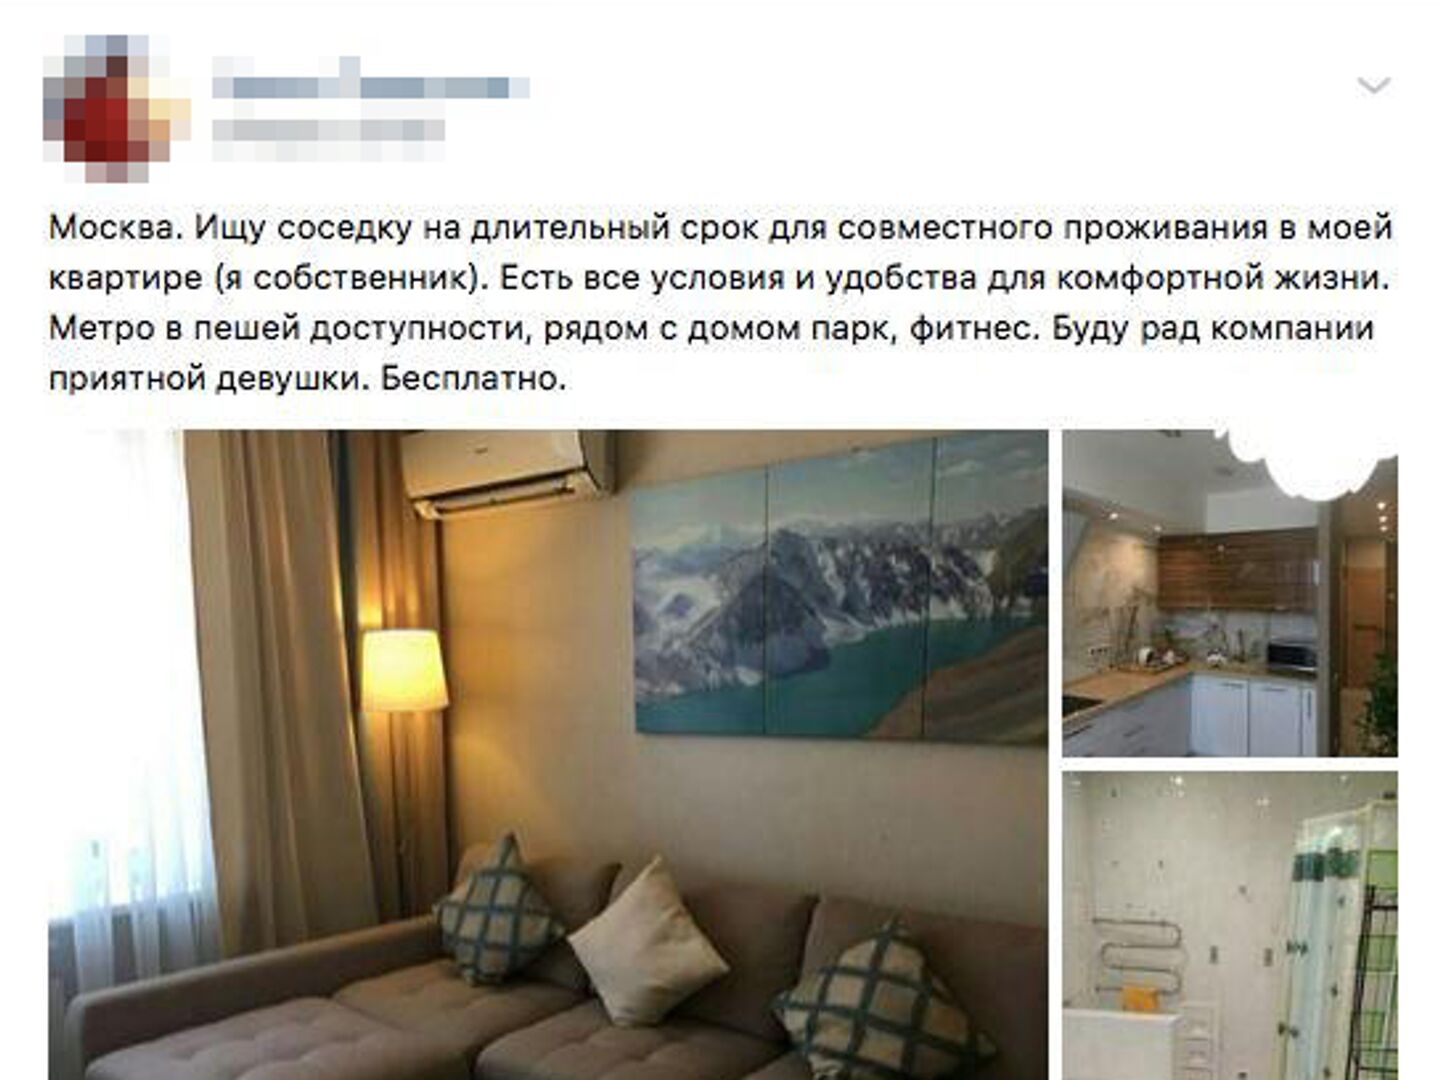 Снять квартиру для романтического вечера в Москве